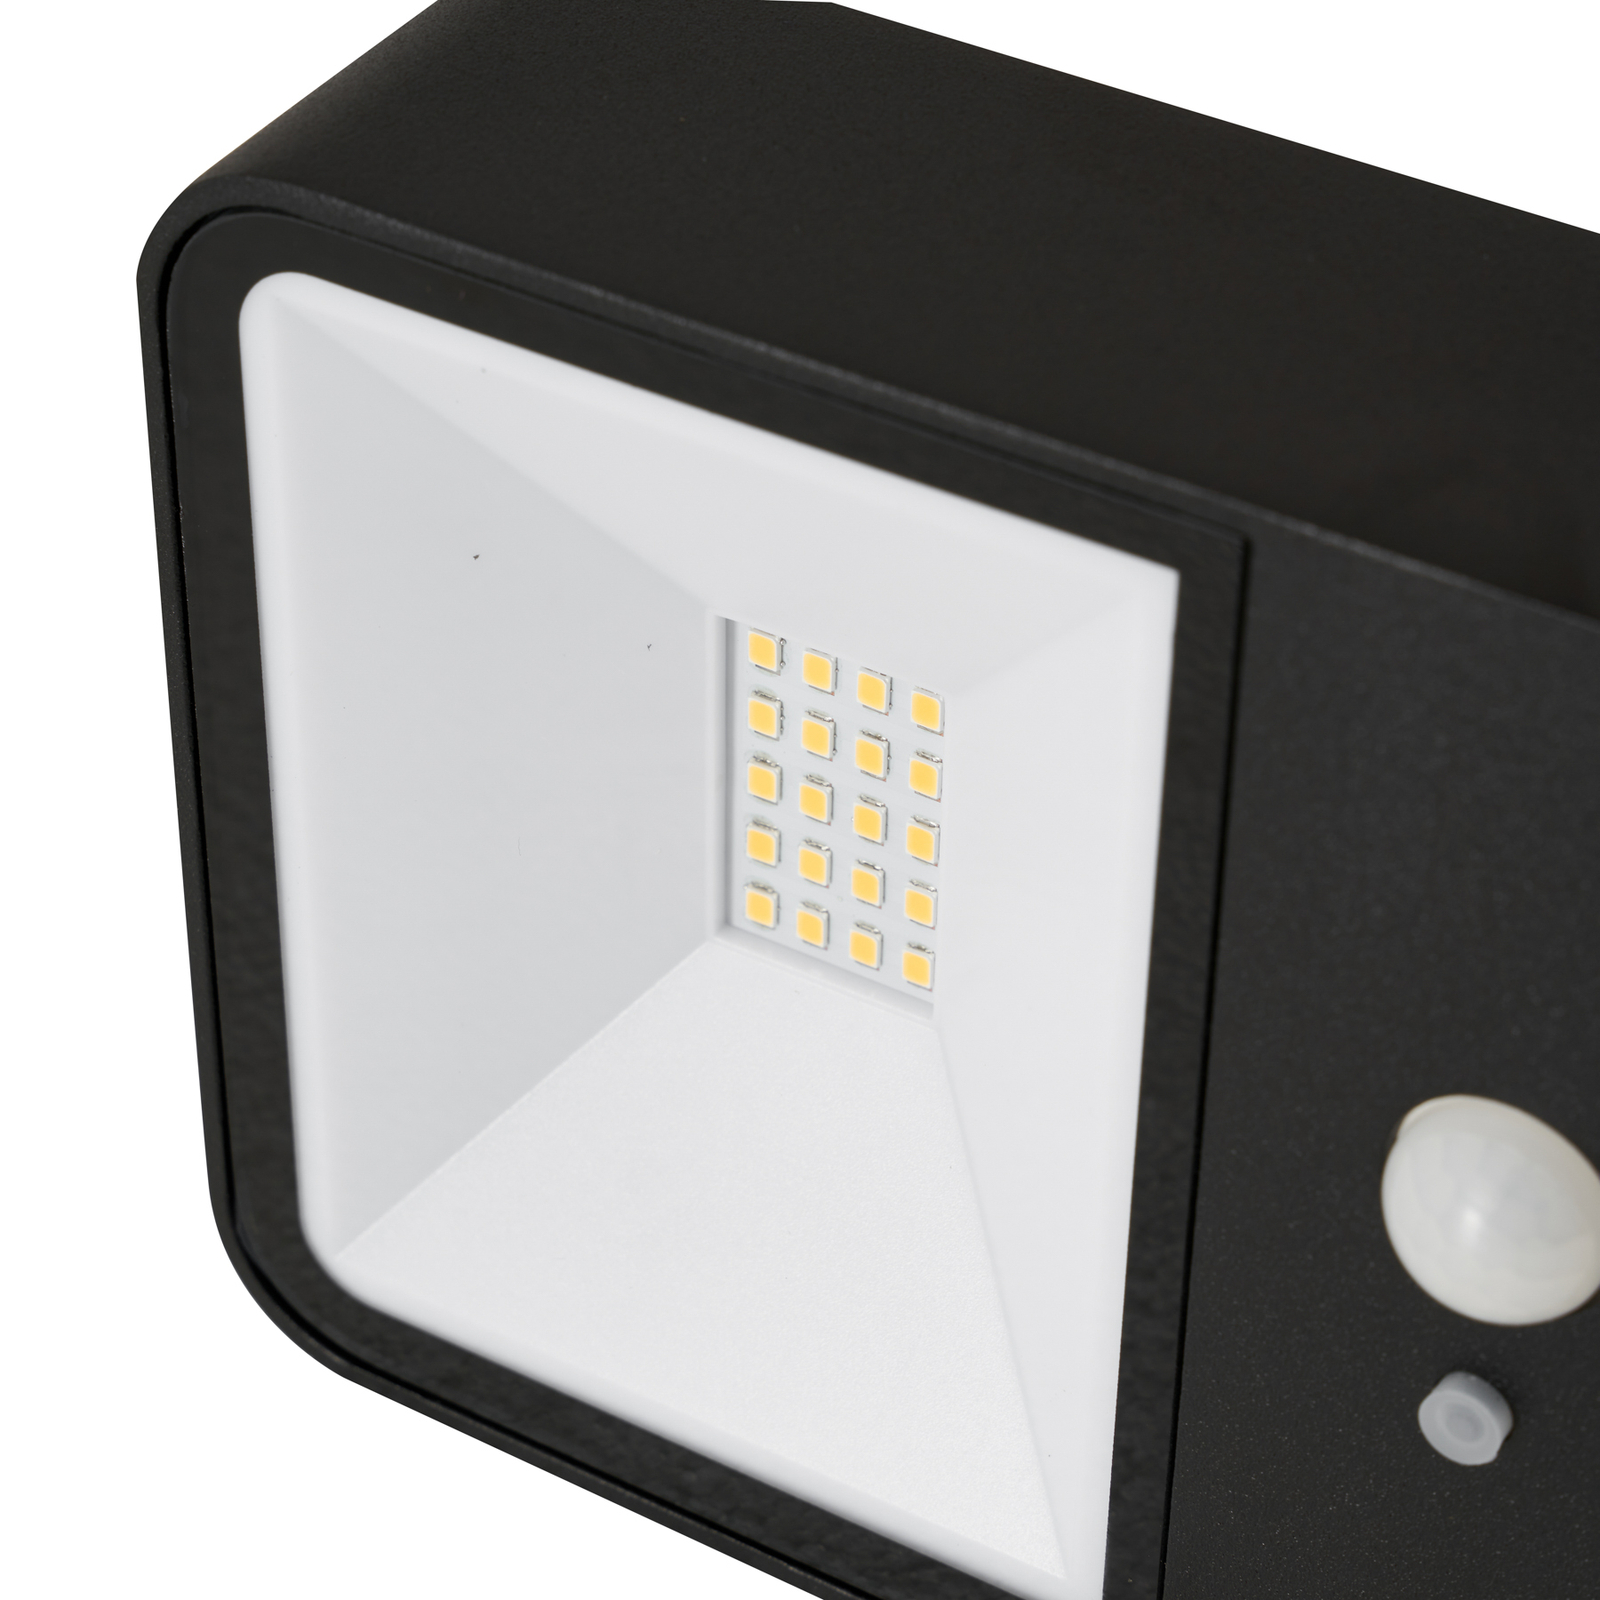 Lucande LED aplique para exterior Dava, altura 5 cm, sensor